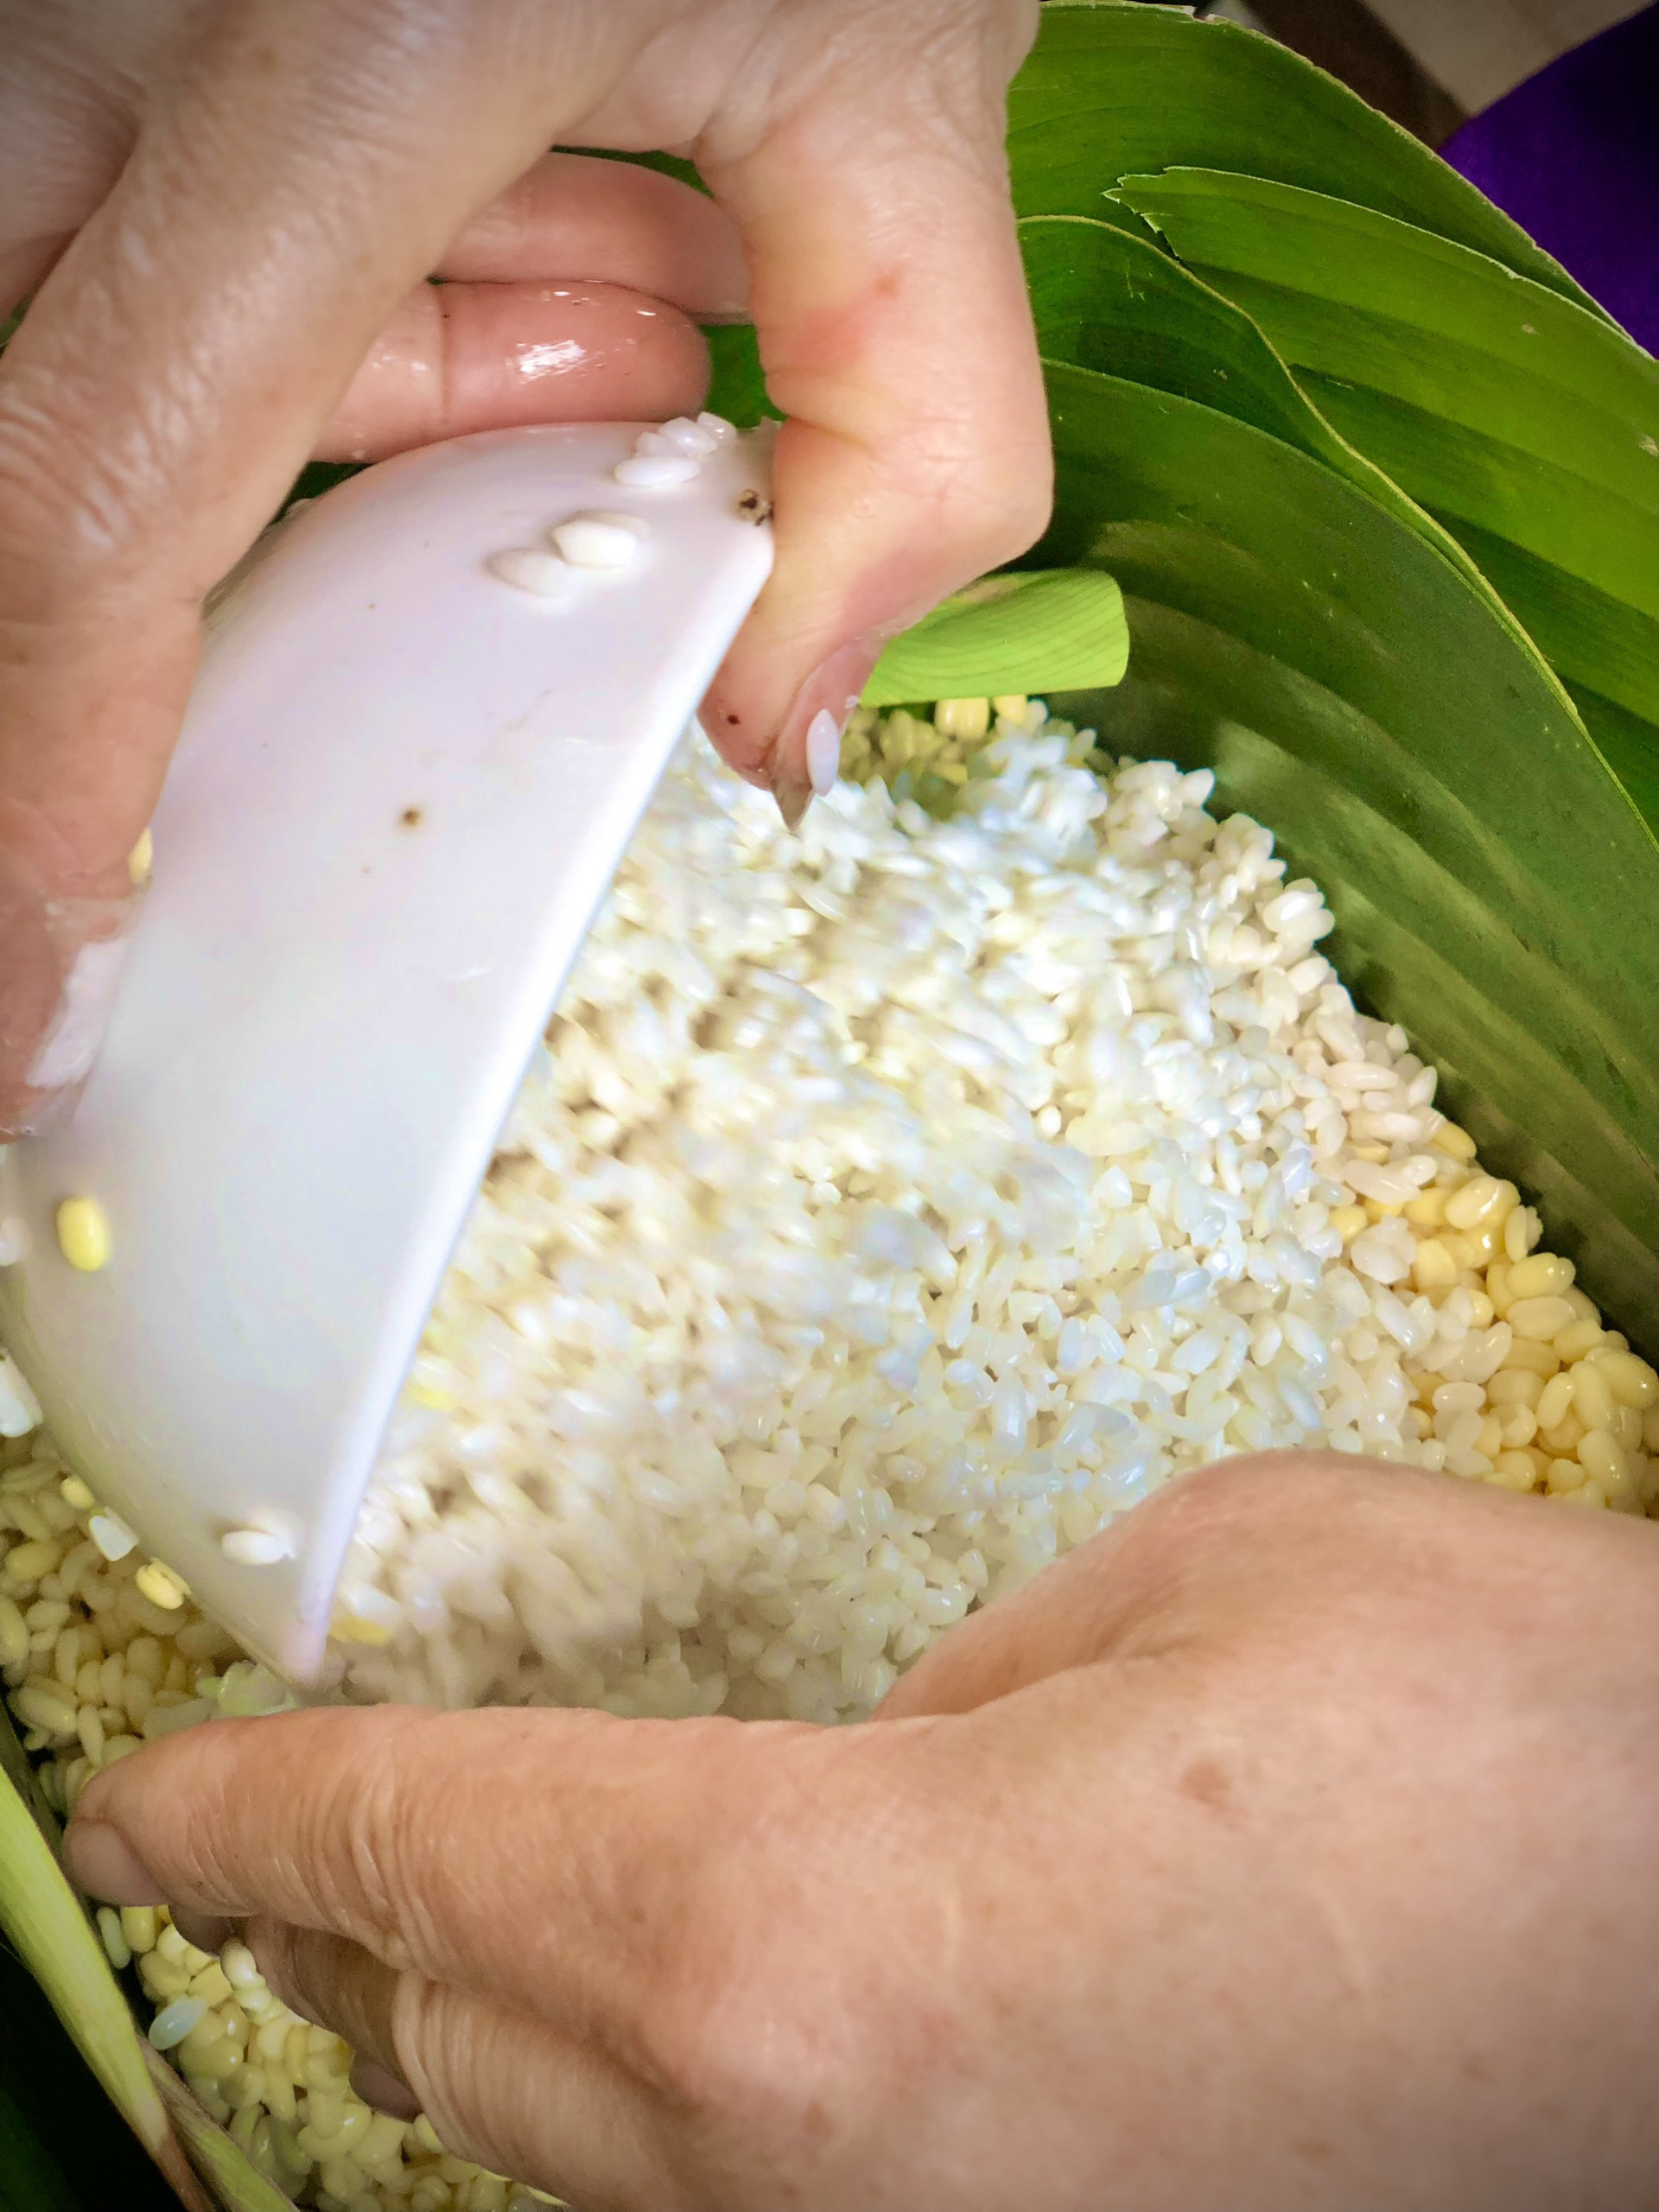 Gạo nếp trắng tinh cùng nhân đỗ xanh, thịt heo ba rọi... là những nguyên liệu để làm nên bánh chưng - chiếc bánh không thể thiếu trong mỗi gia đình vào ngày Tết cổ truyền của dân tộc Việt Nam